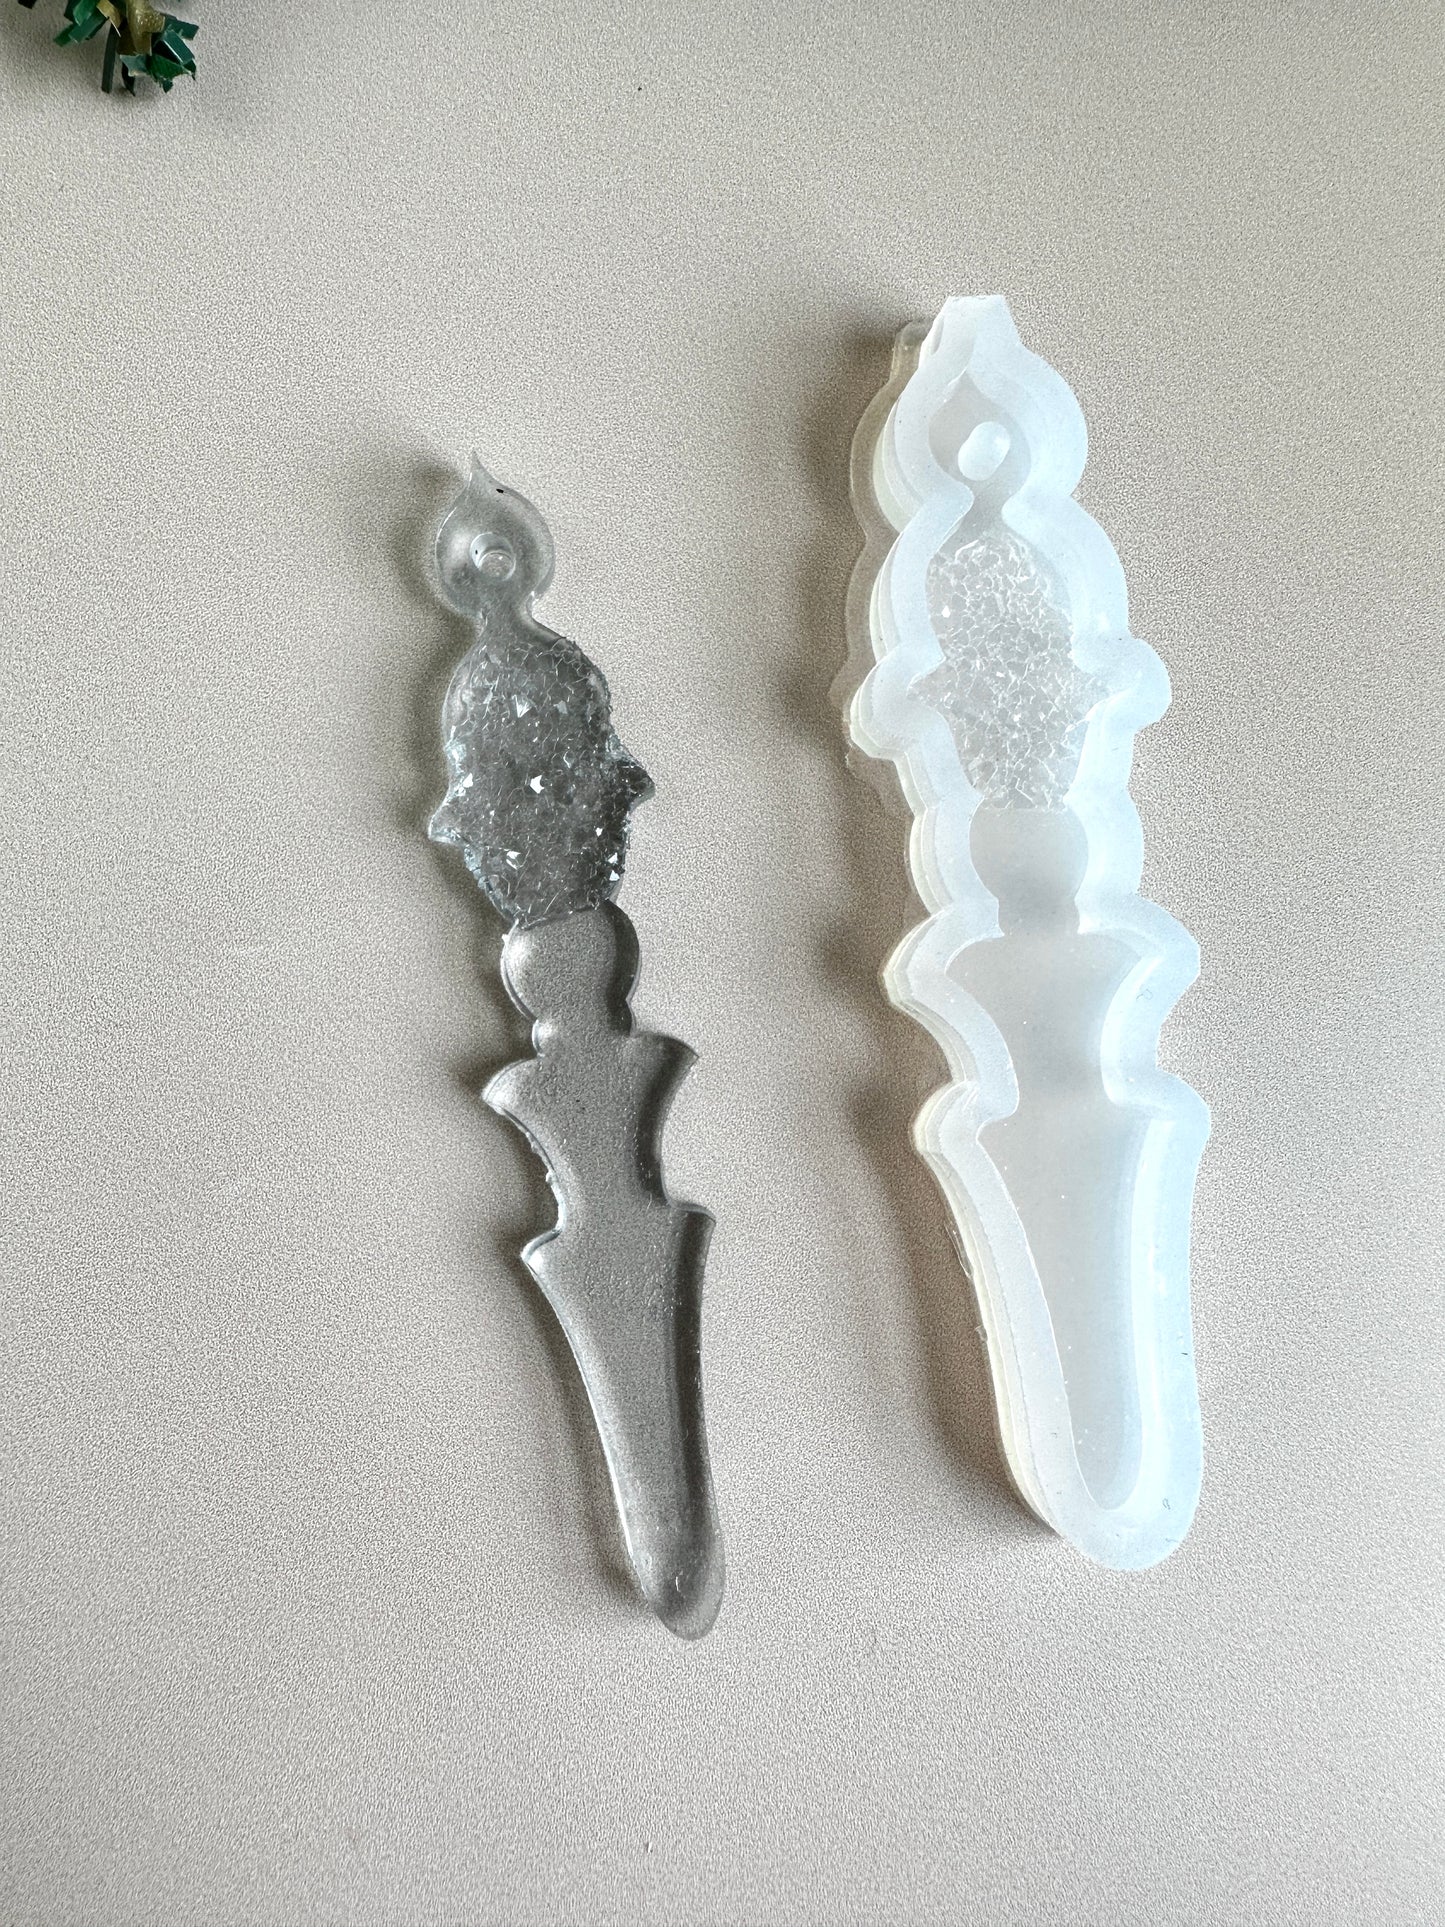 Weihnachtsbaum-Weihnachts-Eiszapfen-Silikonform mit Kristallen, für Kunstkreationen aus Kunstharz, künstlerisches Weihnachtsgeschenk für Heimwerker